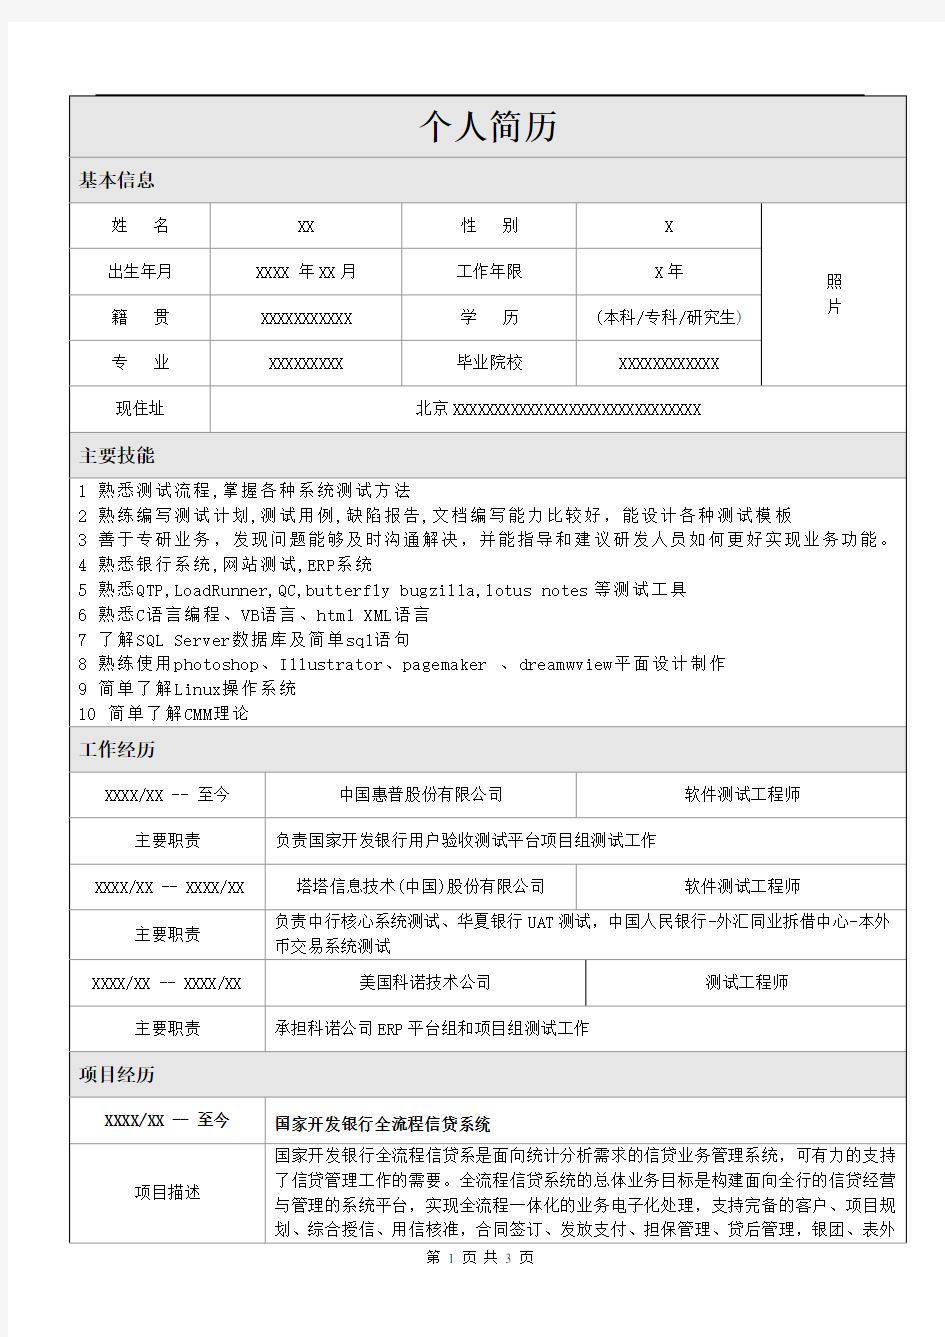 北京IT外包-银行软件测试人员-简历